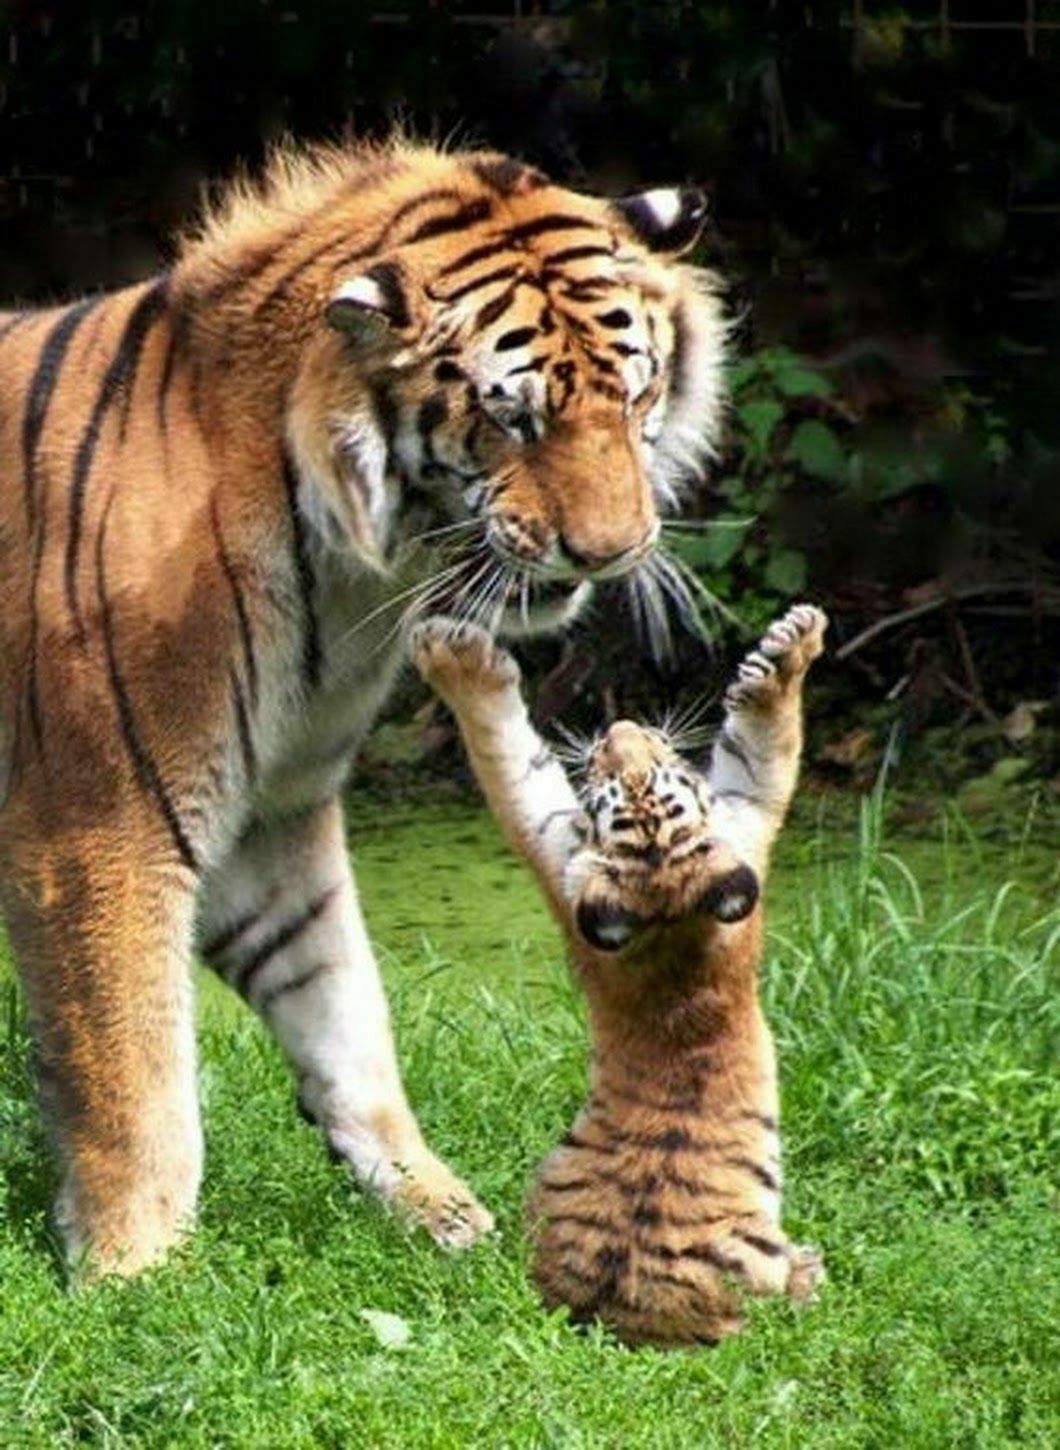 Le petit tigre veut un câlin